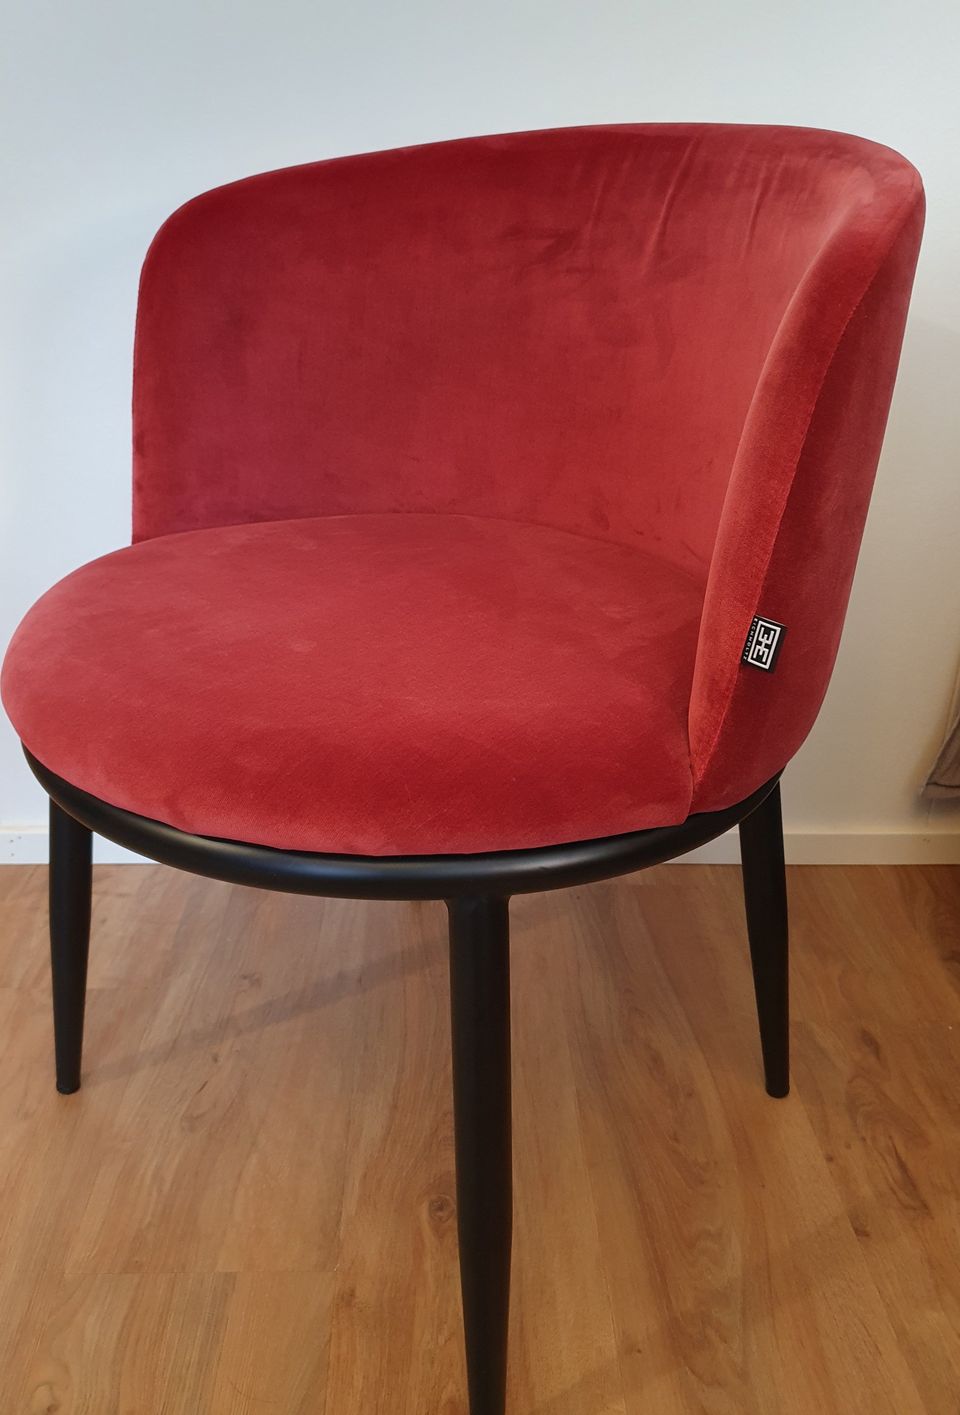 Uusi Filmore Eichholtz pyöreä punainen tuoli